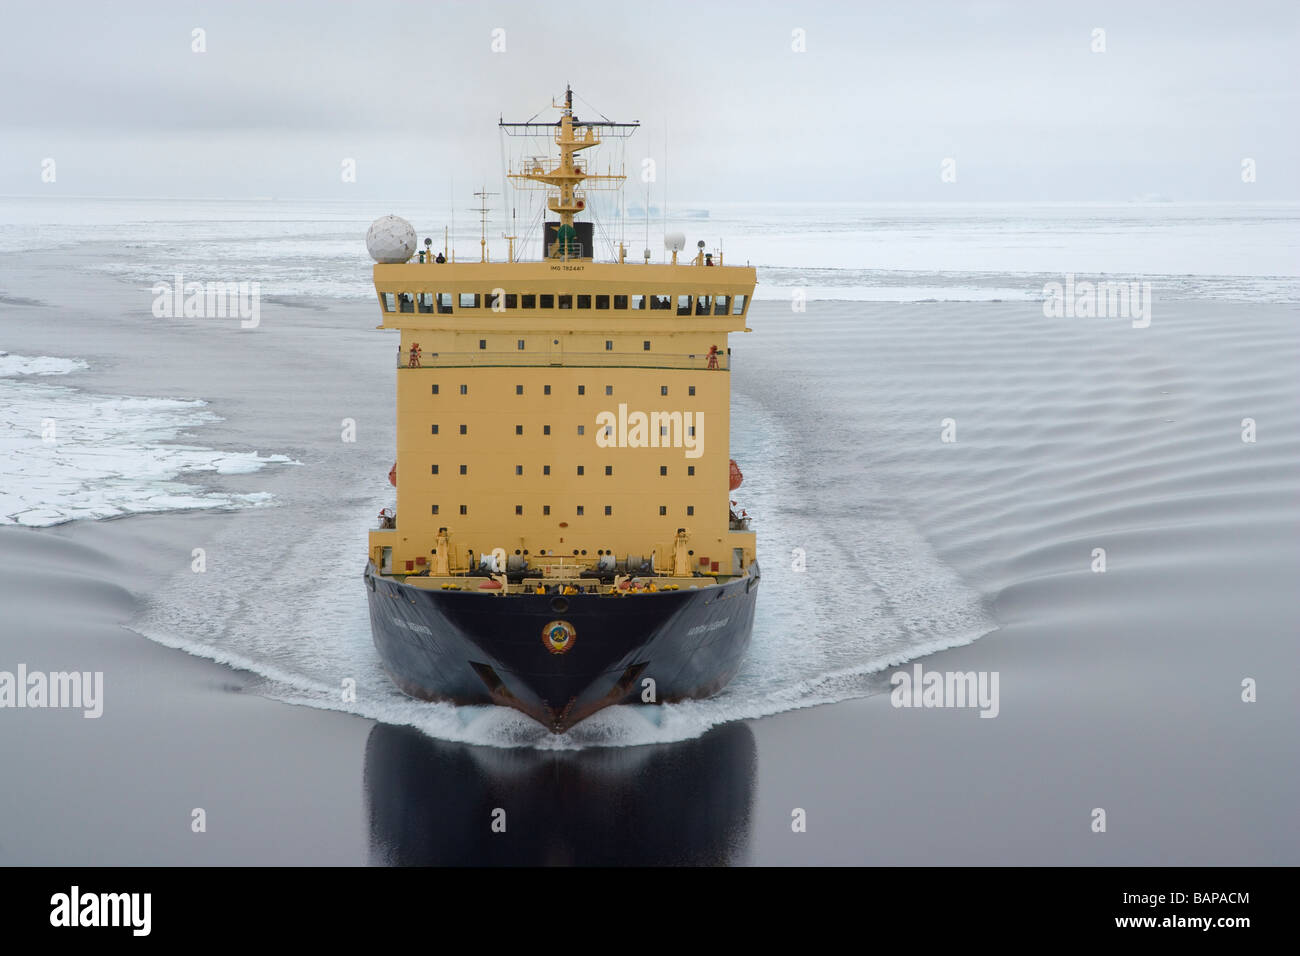 Brise-glace russe Expedition Cruise ship on traverse la mer d'Amundsen dans l'ouest de l'Antarctique banquise contexte l'onde de réflexion dans l'eau Banque D'Images